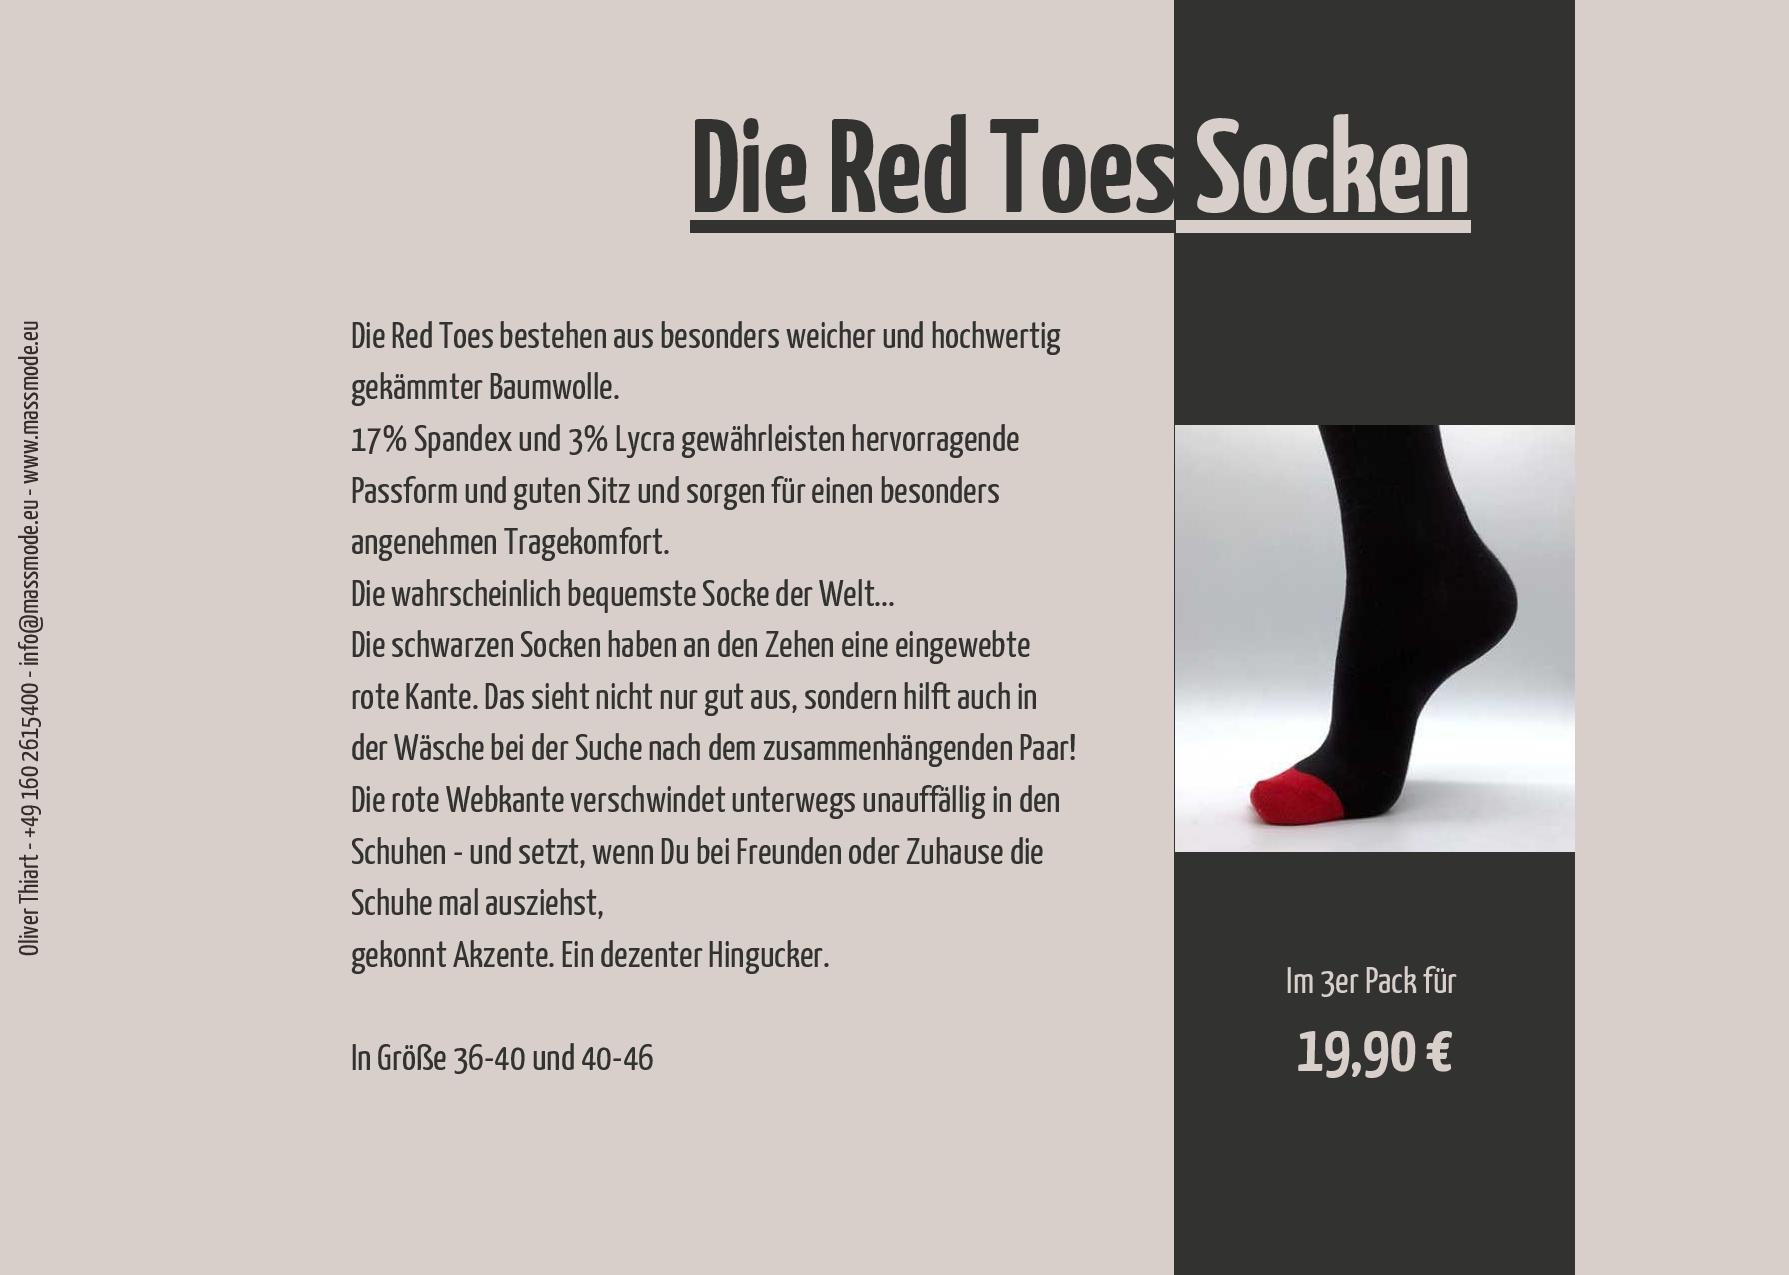 Die Red Toes Socken